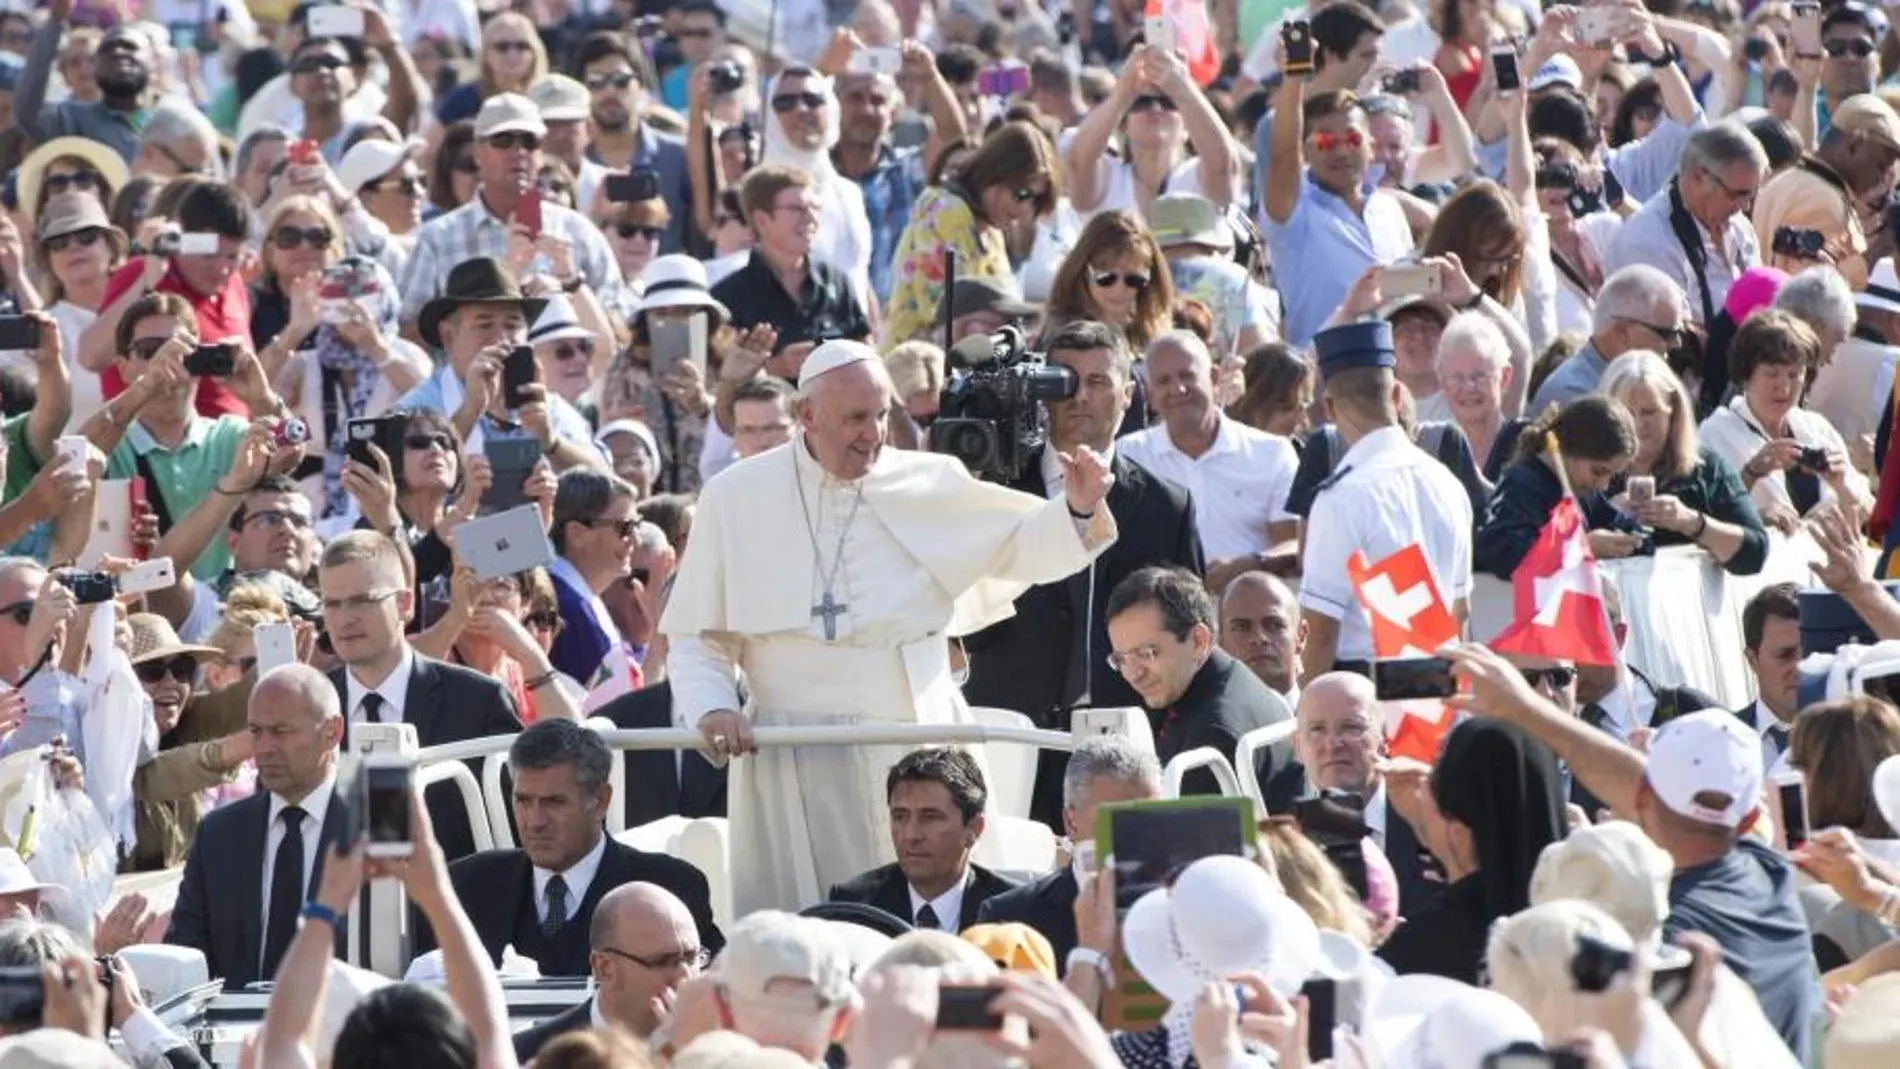 El Papa Francisco saluda a los feligreses a su llegada a la audiencia general de los miércoles en la plaza de San Pedro en la Ciudad del Vaticano